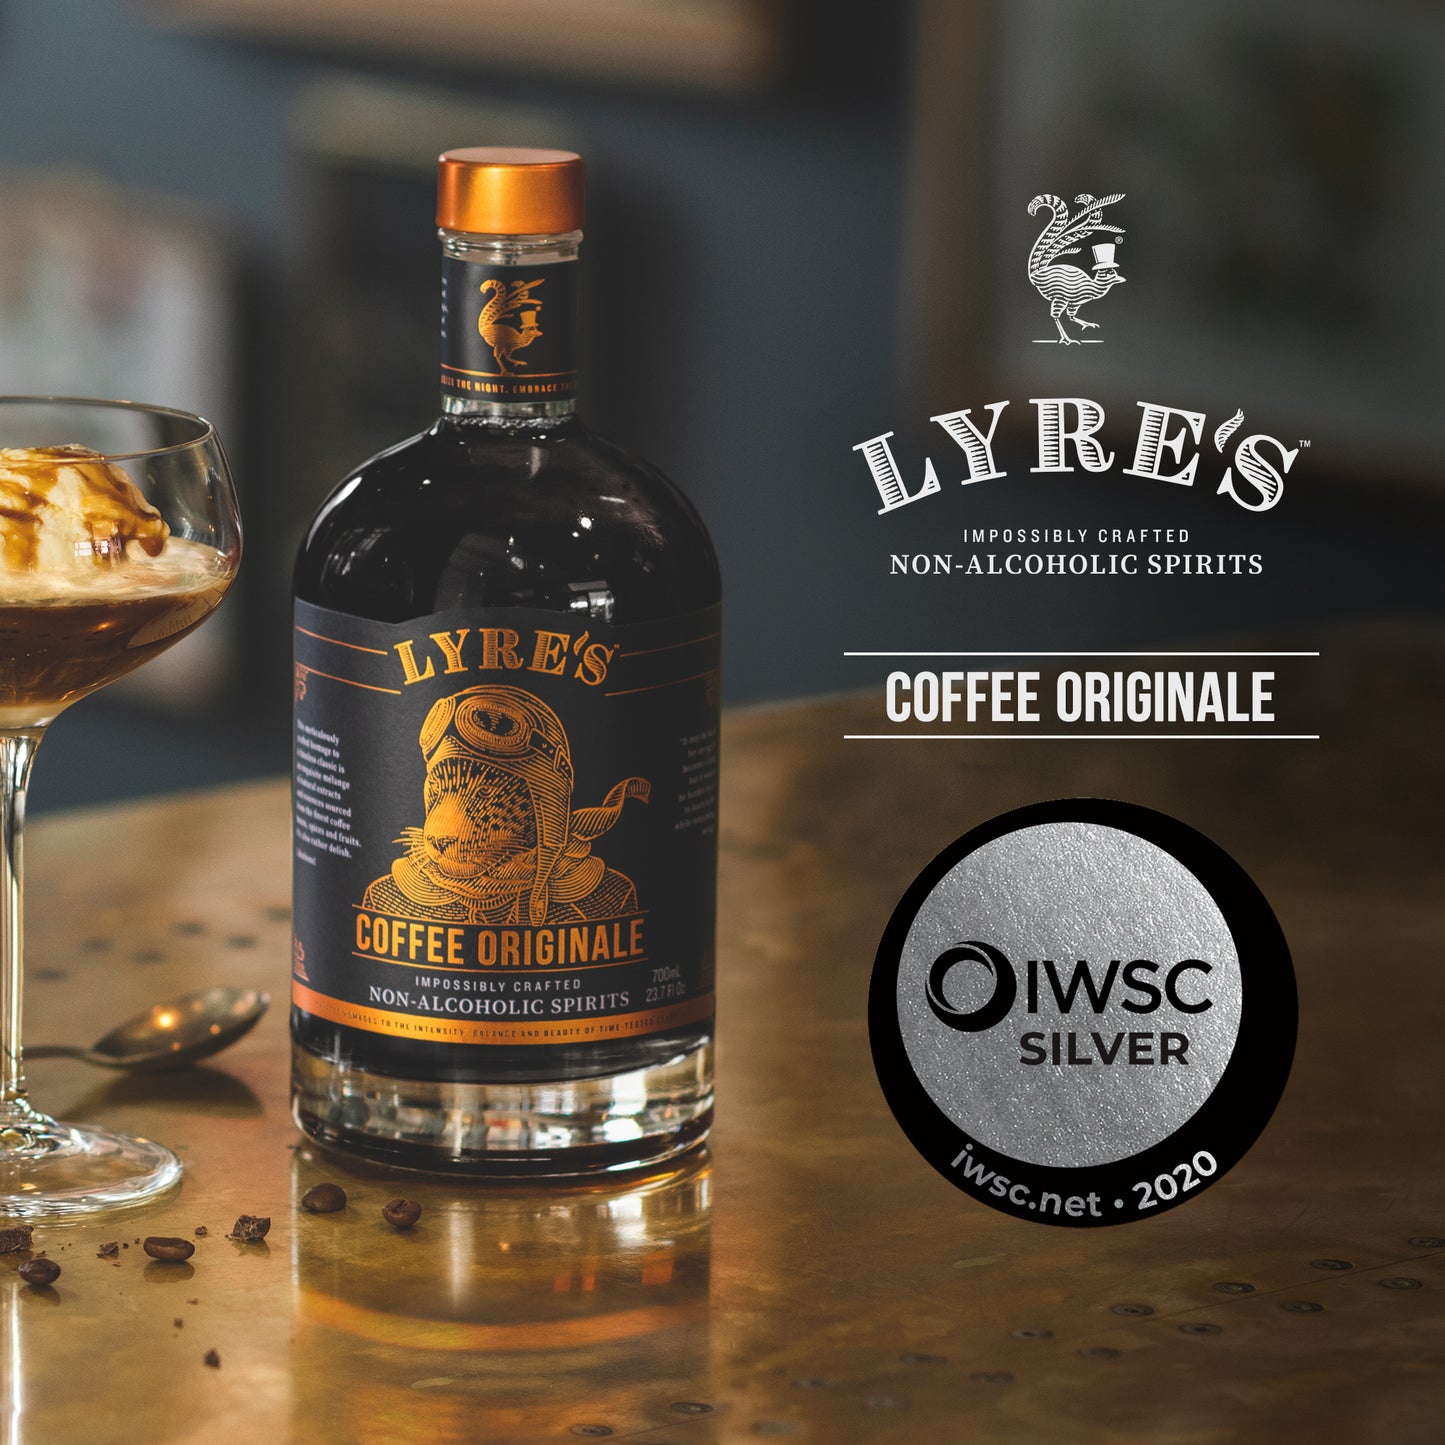 Lyre's Non-Alcoholic Coffee Originale Liqueur IWSC Award